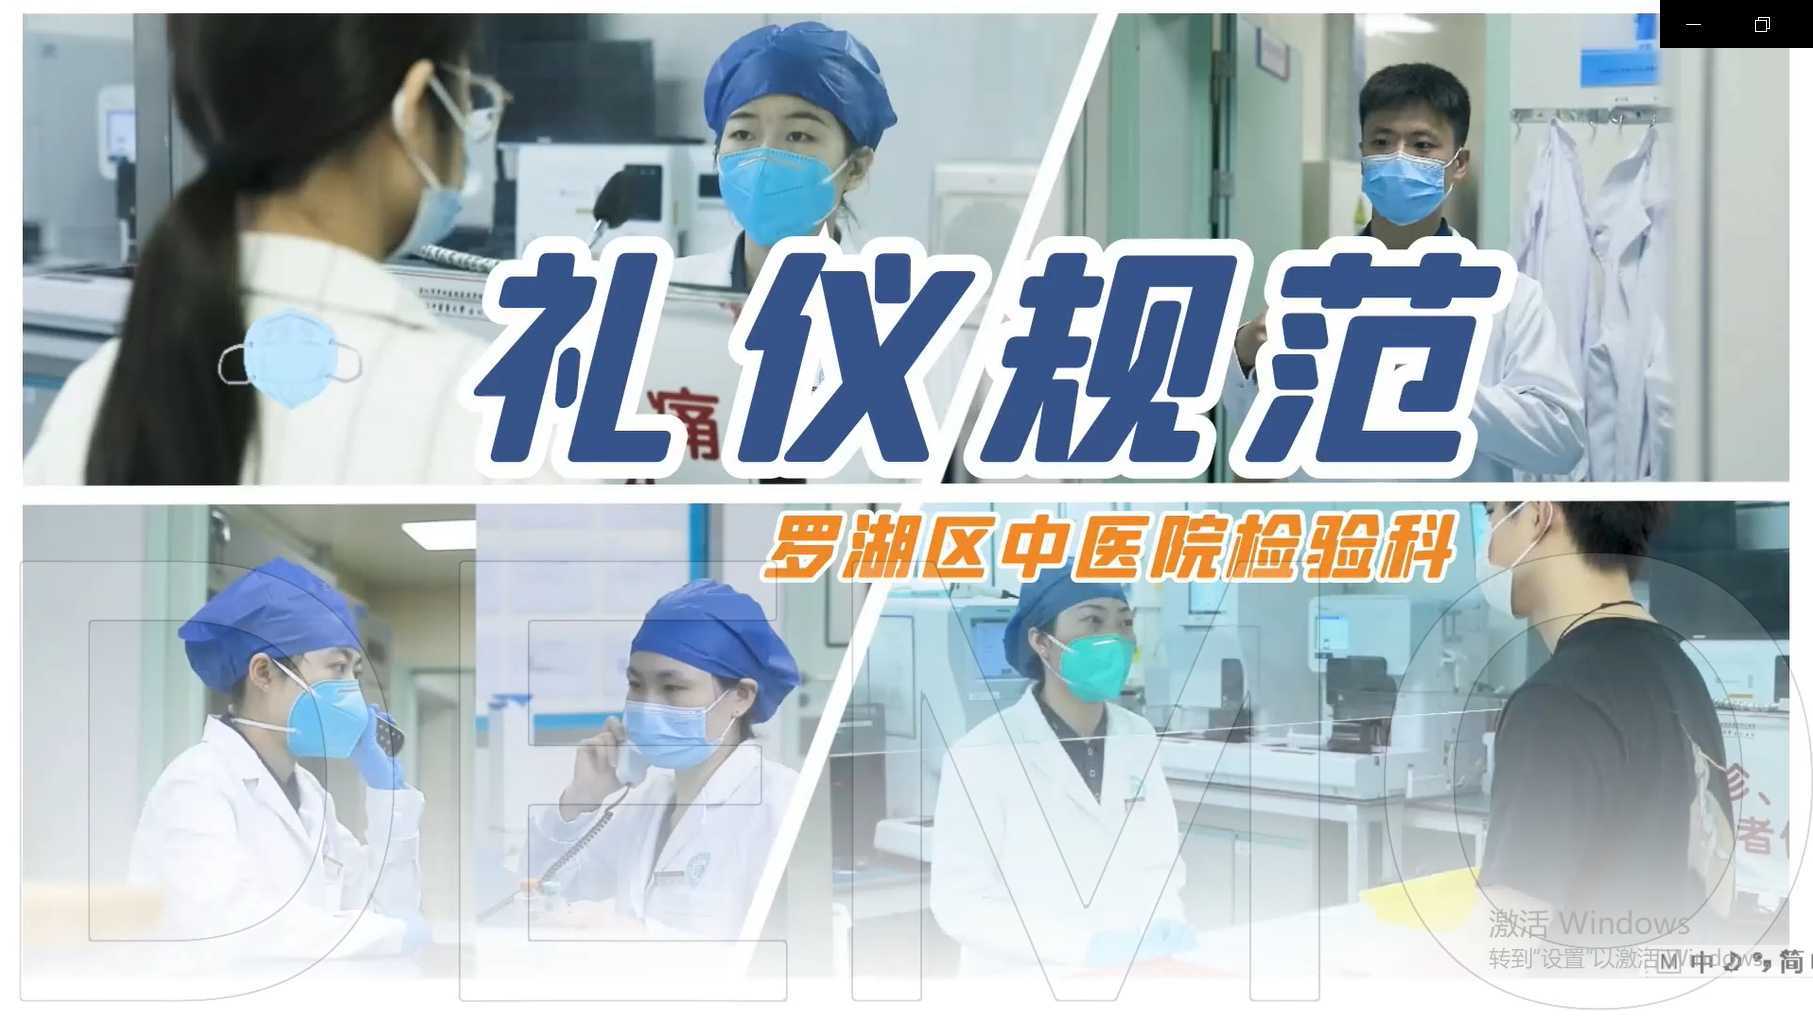 宣传类视频作品：中医院检验科加水印